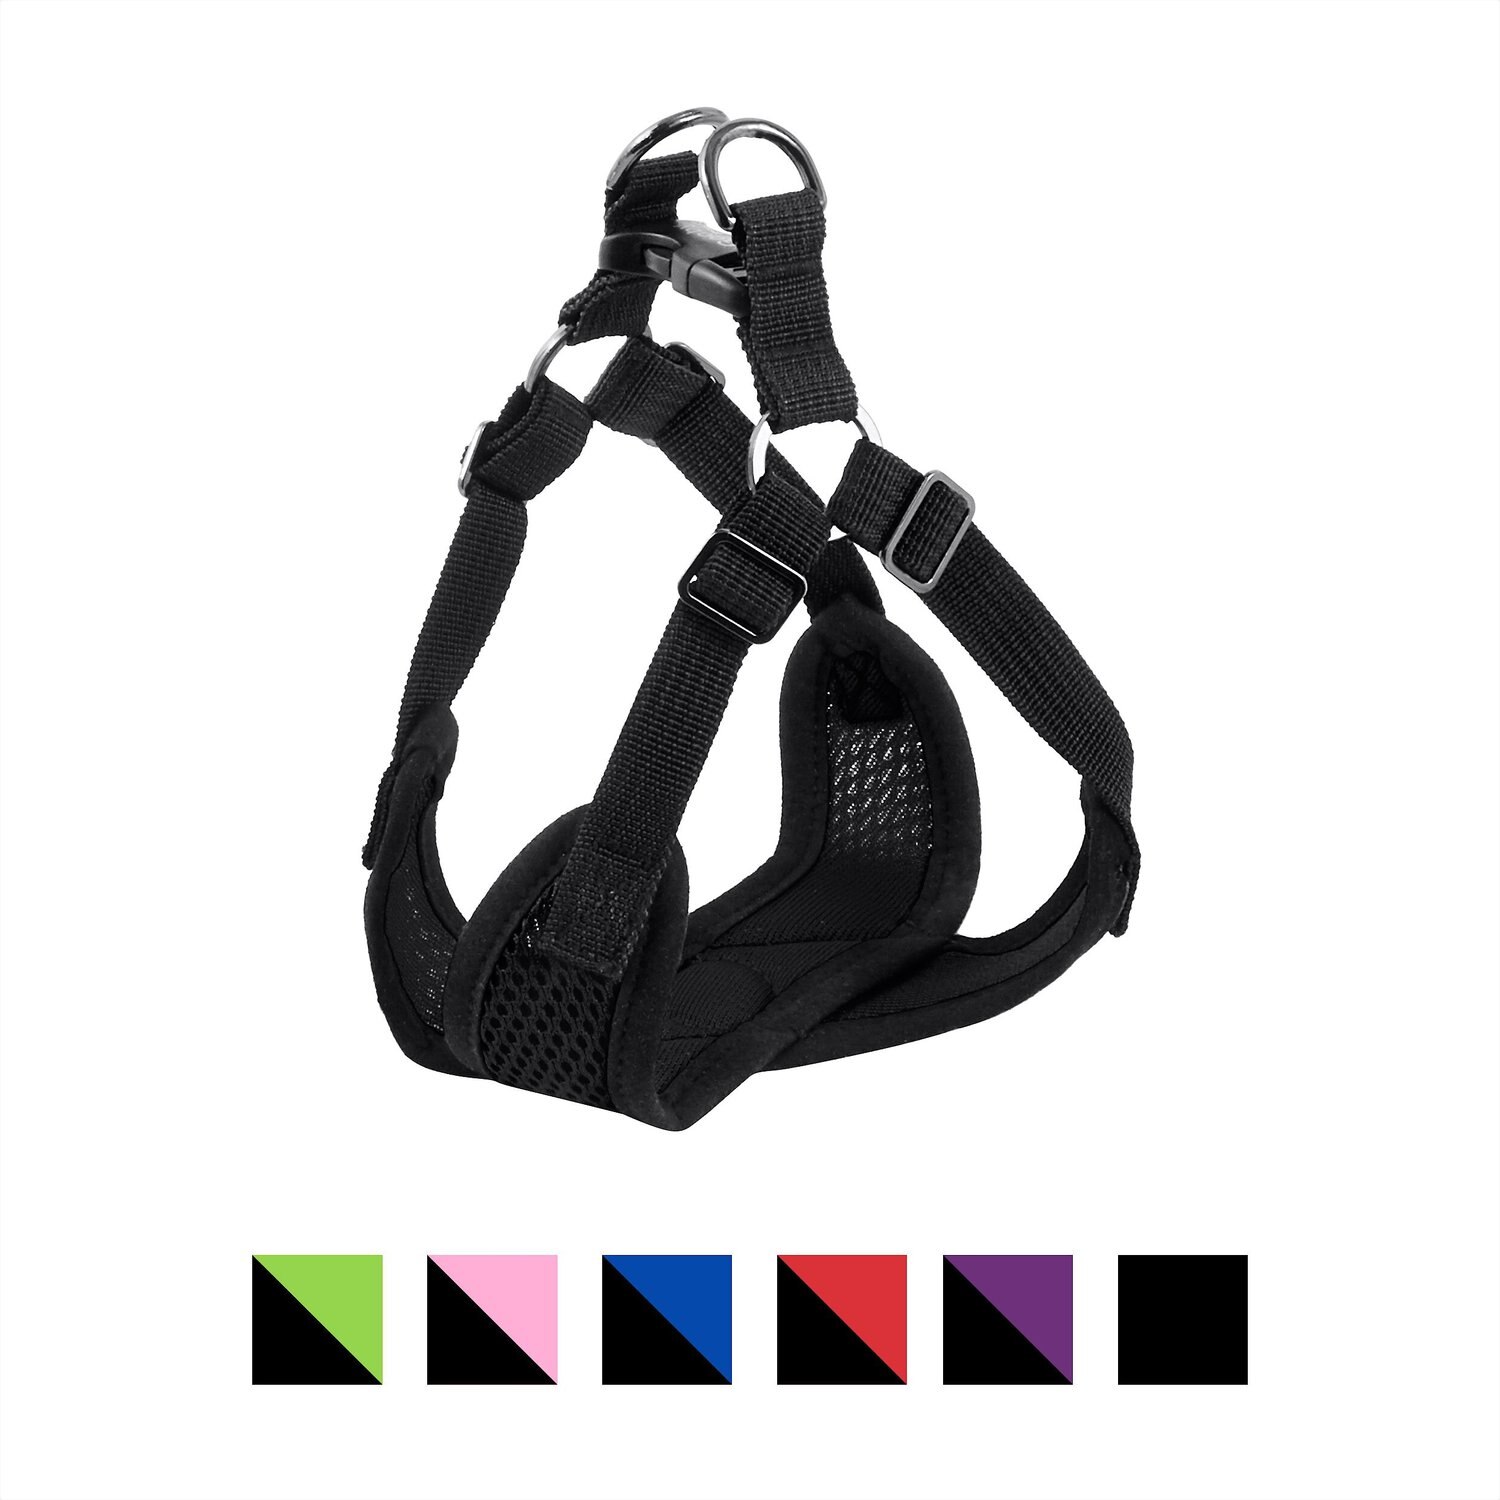 gooby comfort x harness